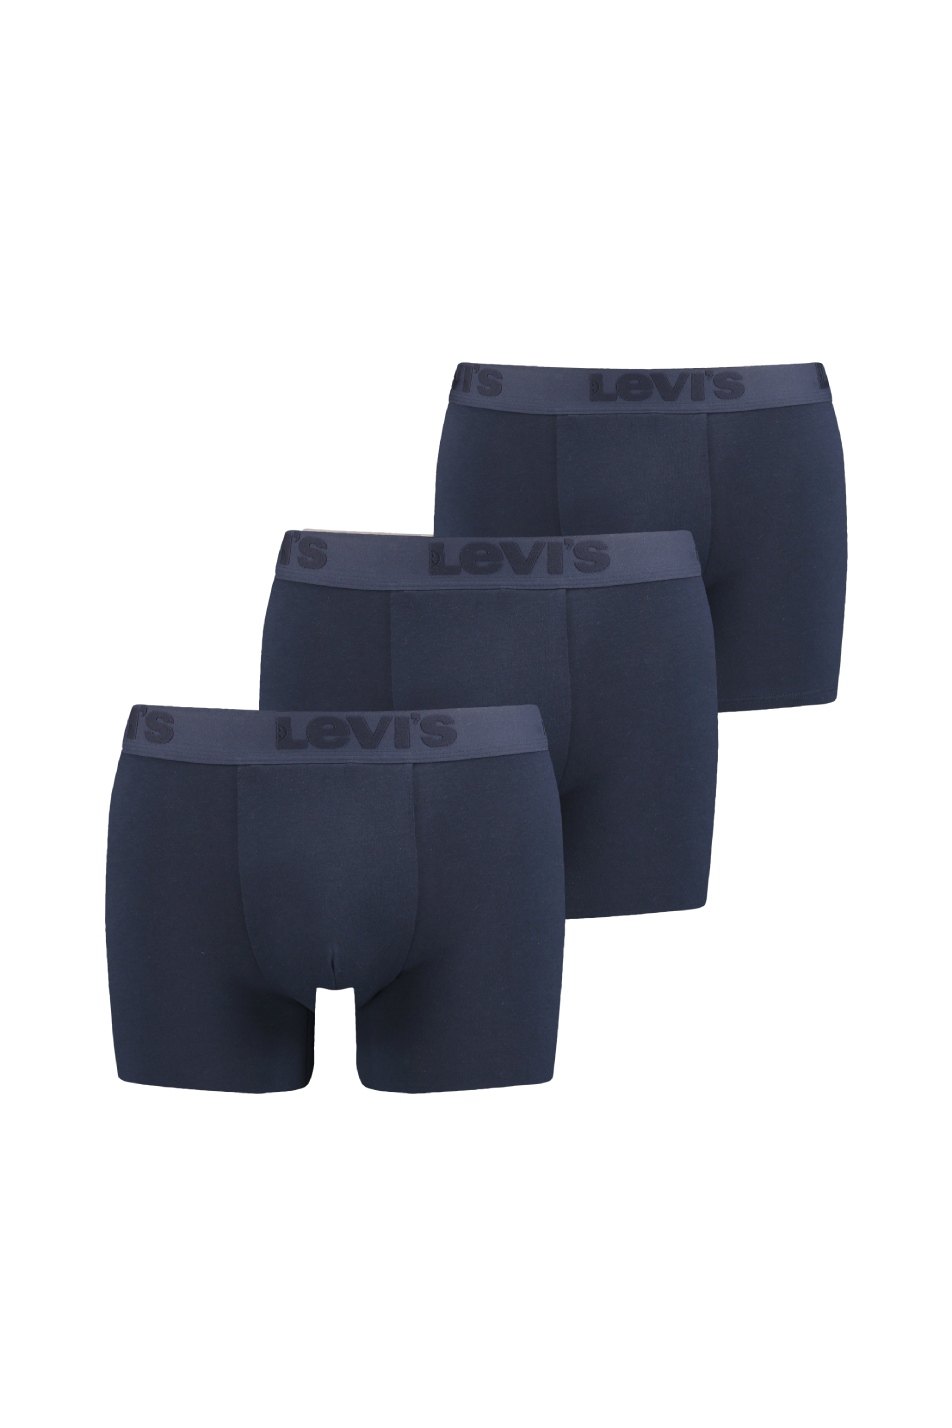 Levi's Men's 3 Pack Premium Boxer Brief